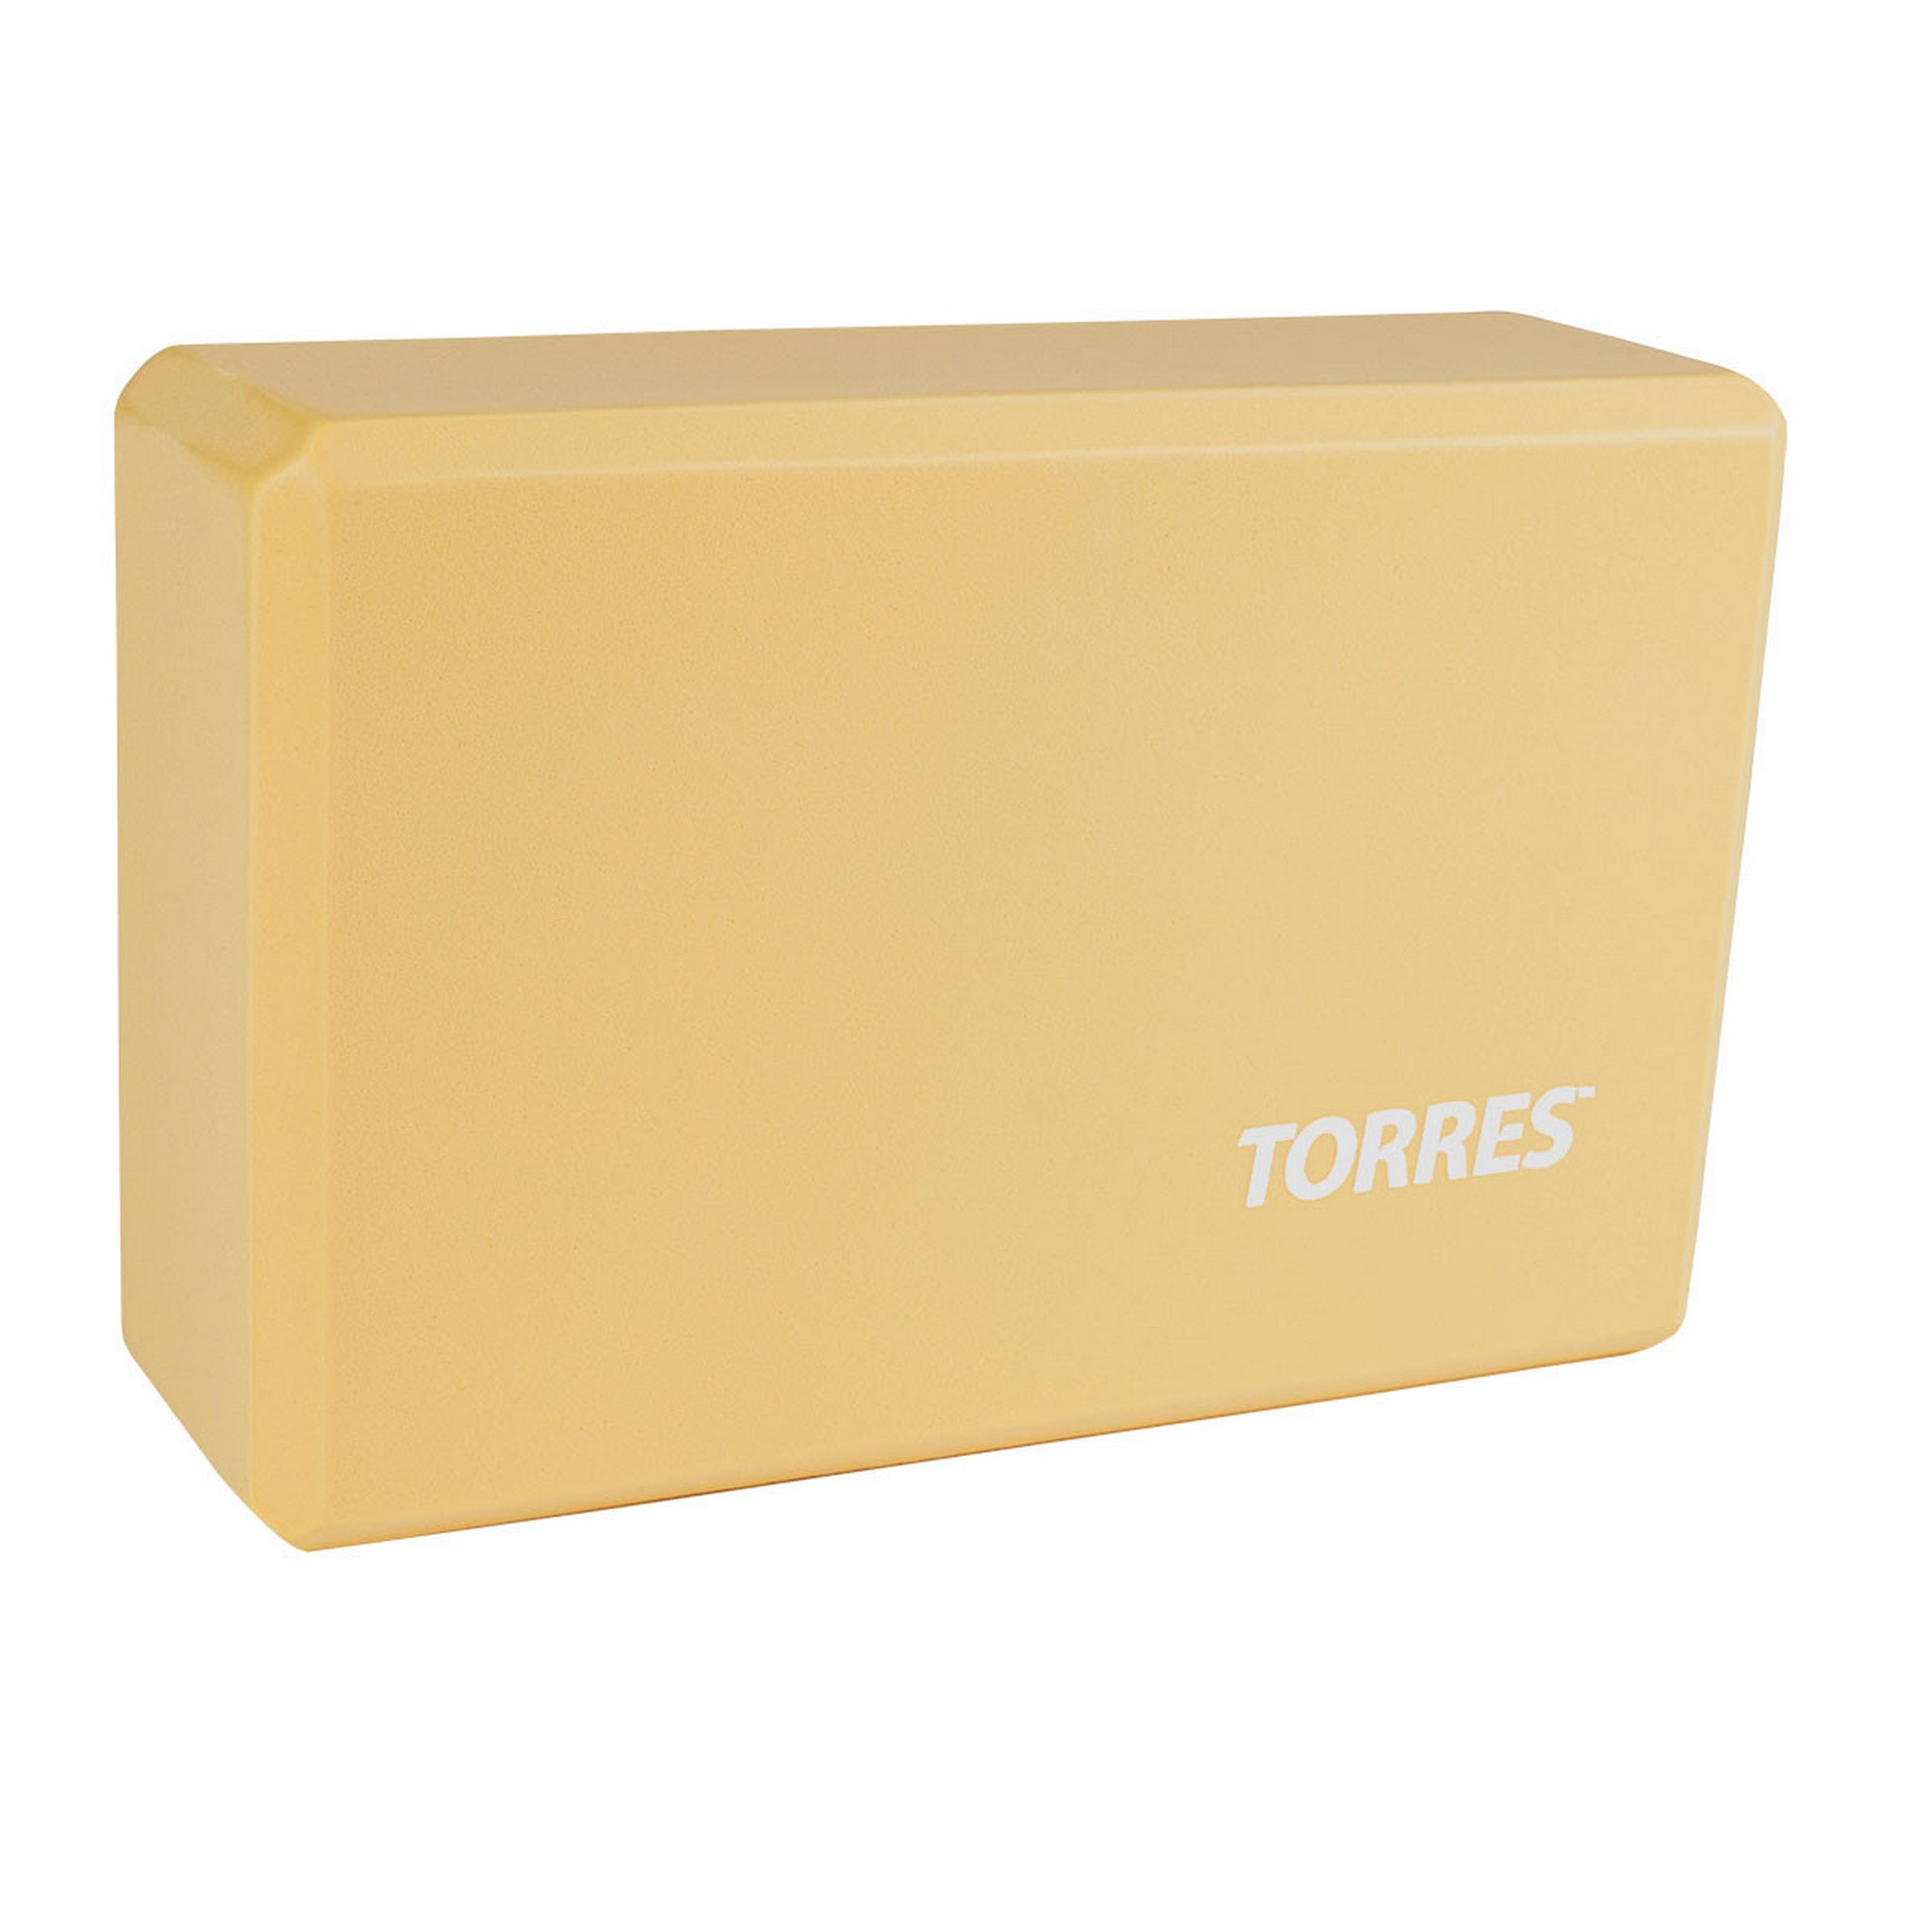    Torres  , 8x15x23  YL8005B 